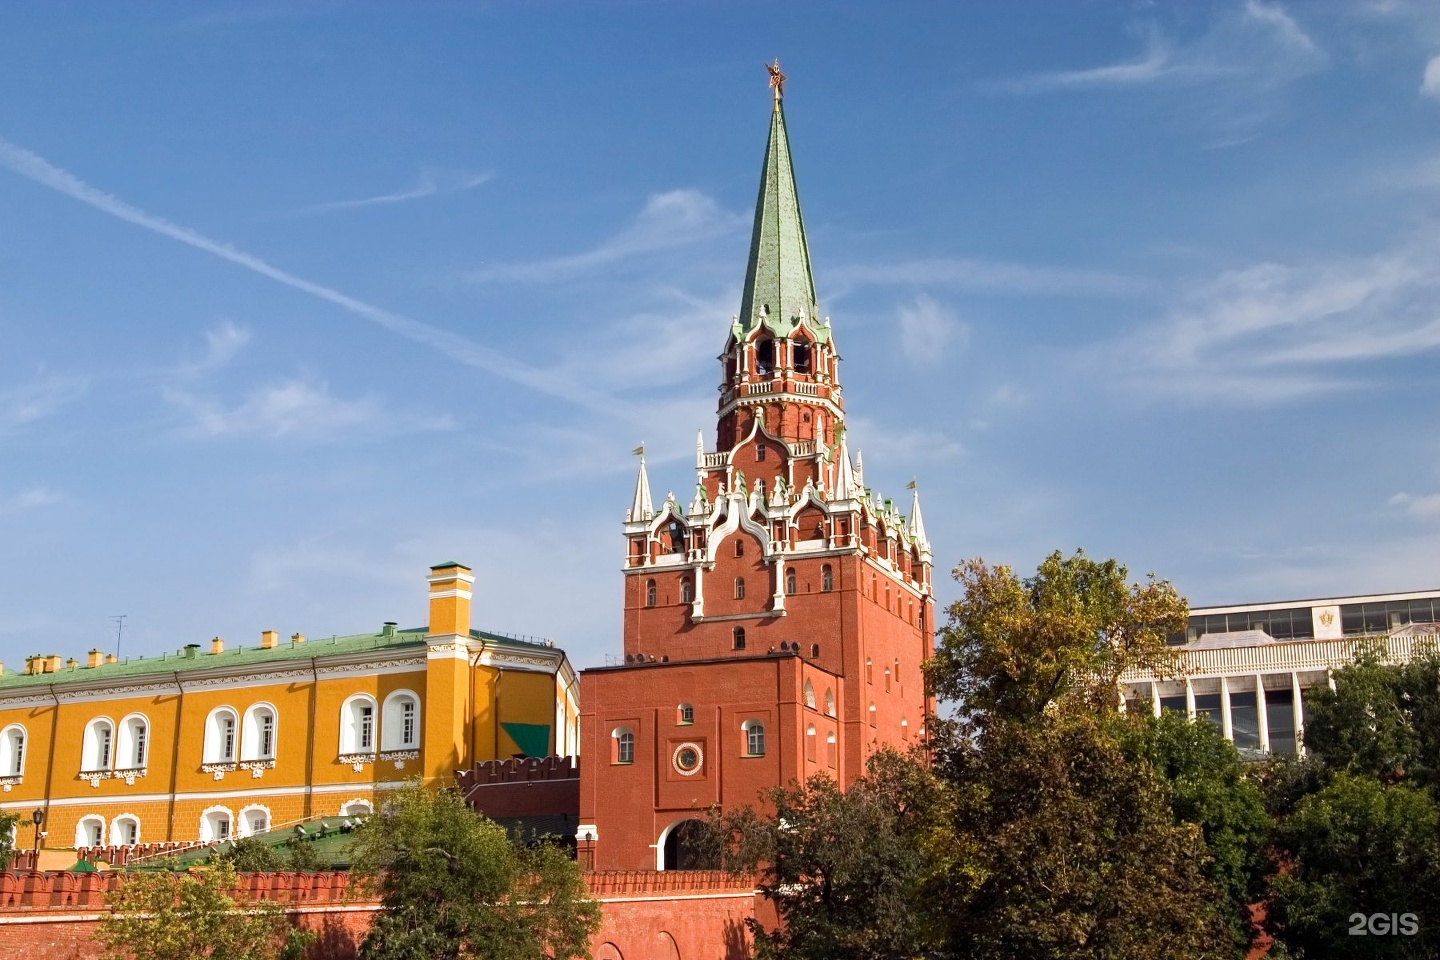 кремль его башни названия